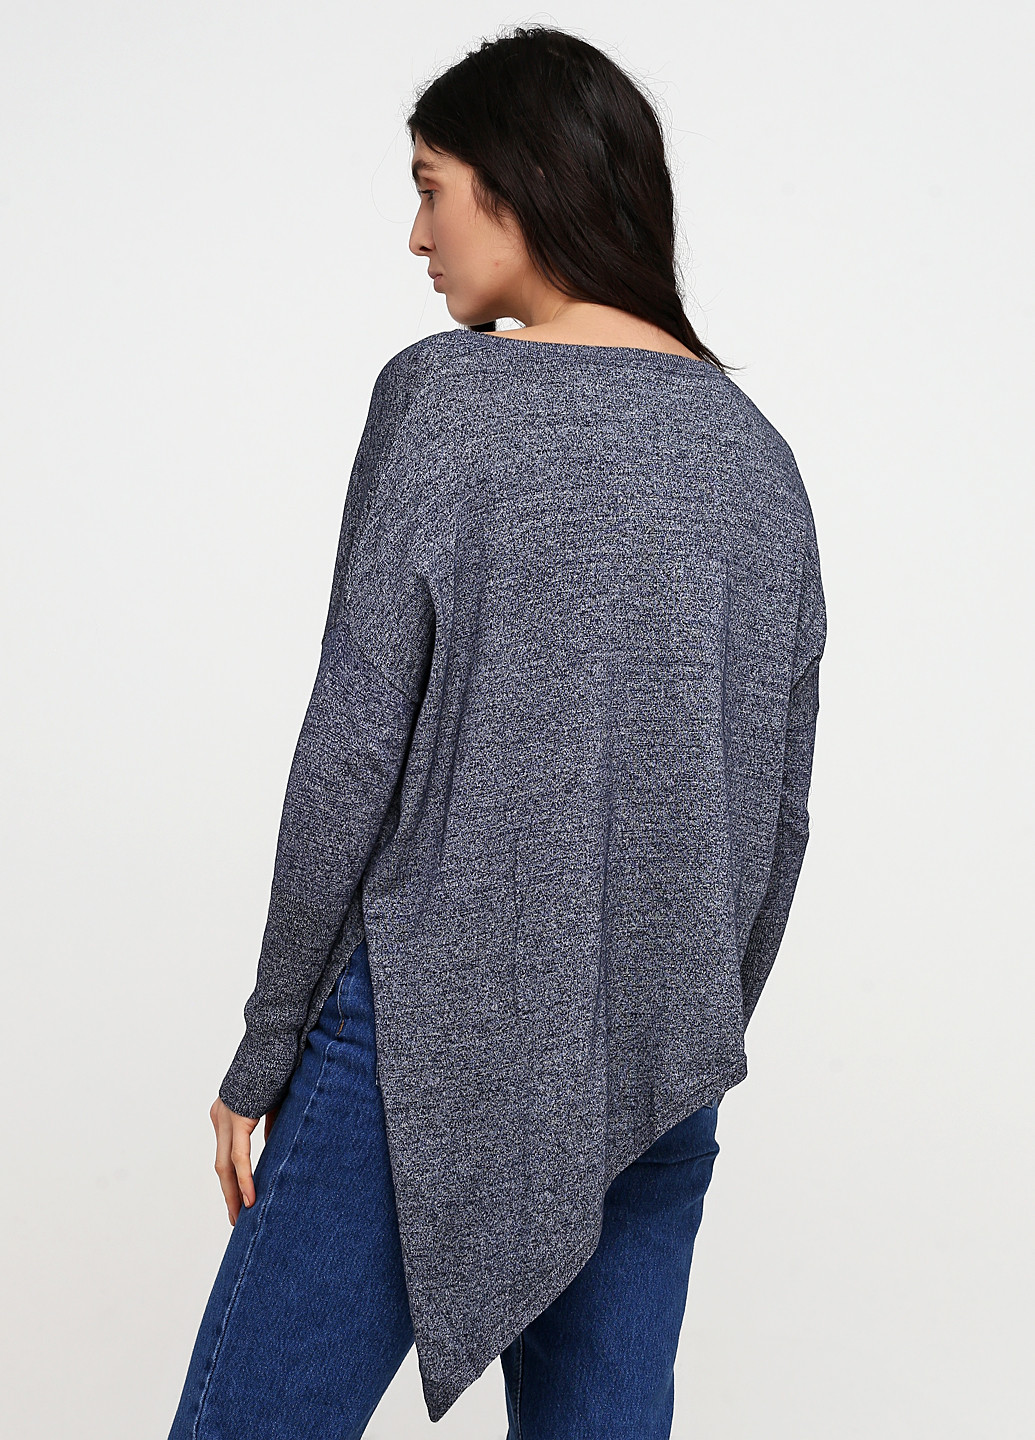 Темно-синий демисезонный пуловер пуловер Motivi